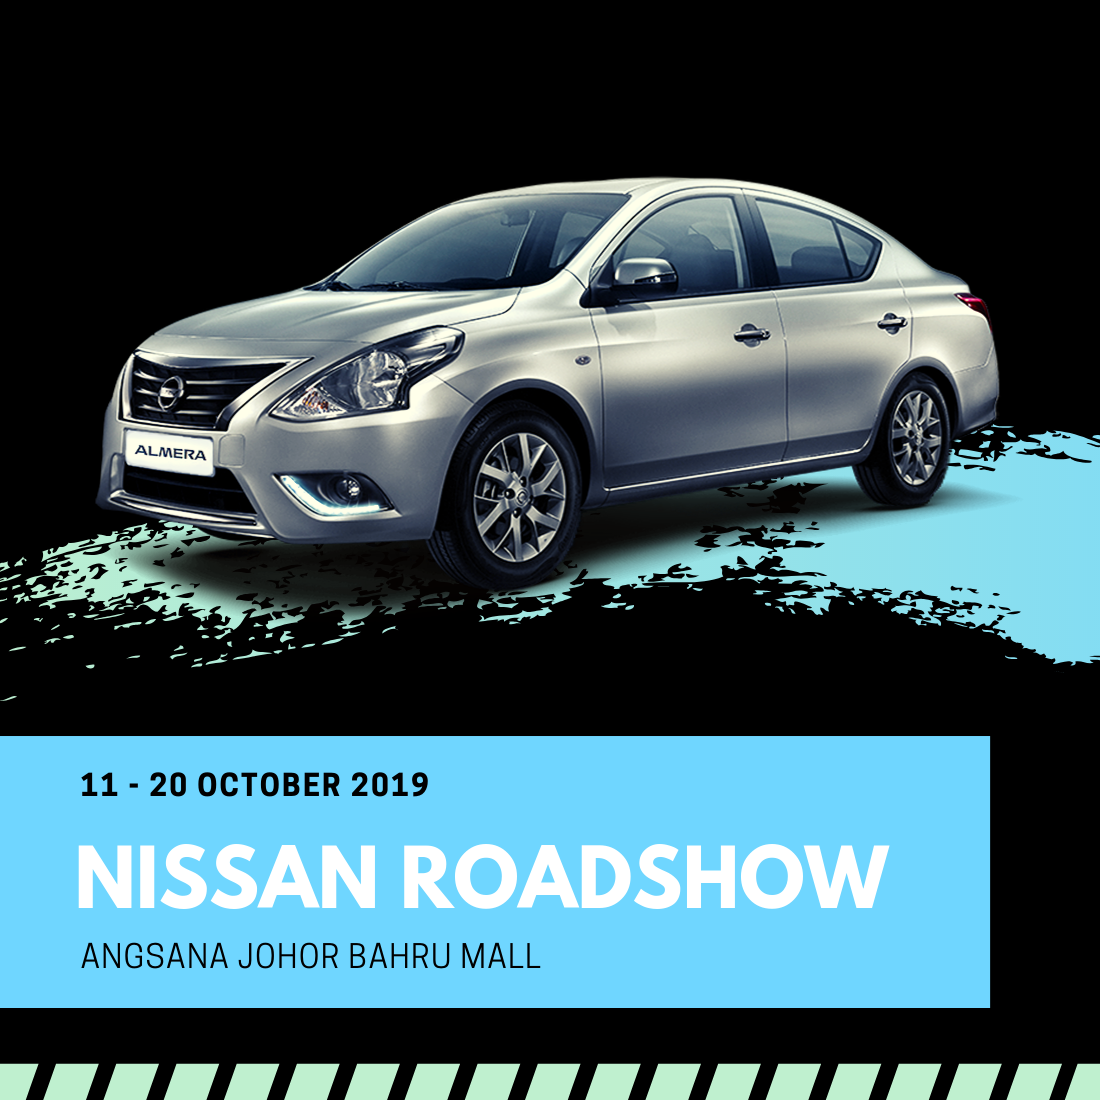 [Johor] Oct 11 – 20, Nissan Roadshow @ Angsana Johor Bahru Mall